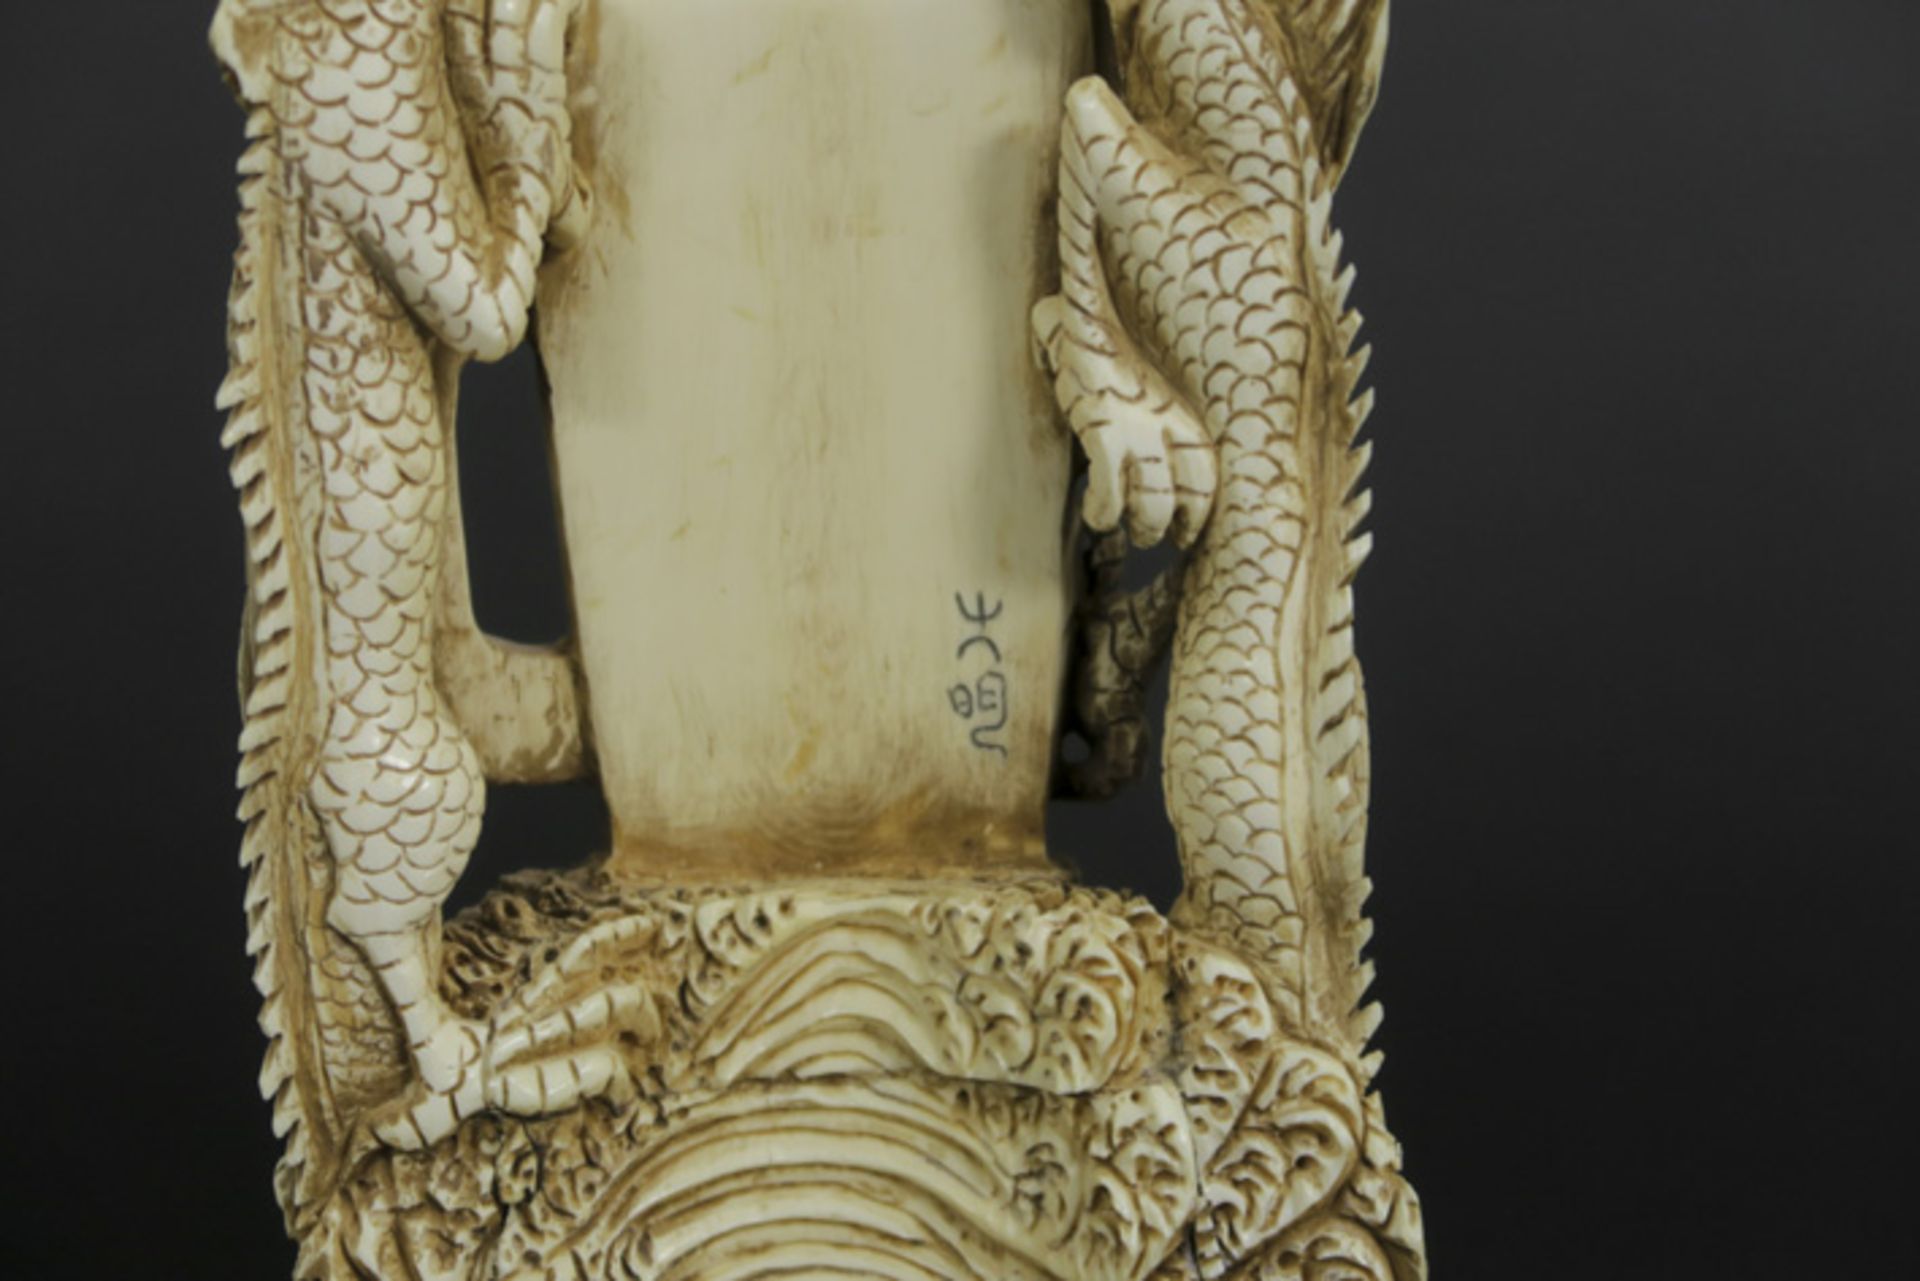 Speciale Chinese sculptuur in ivoor met een soort rotsformatie en met een ingewerkt [...] - Bild 4 aus 5